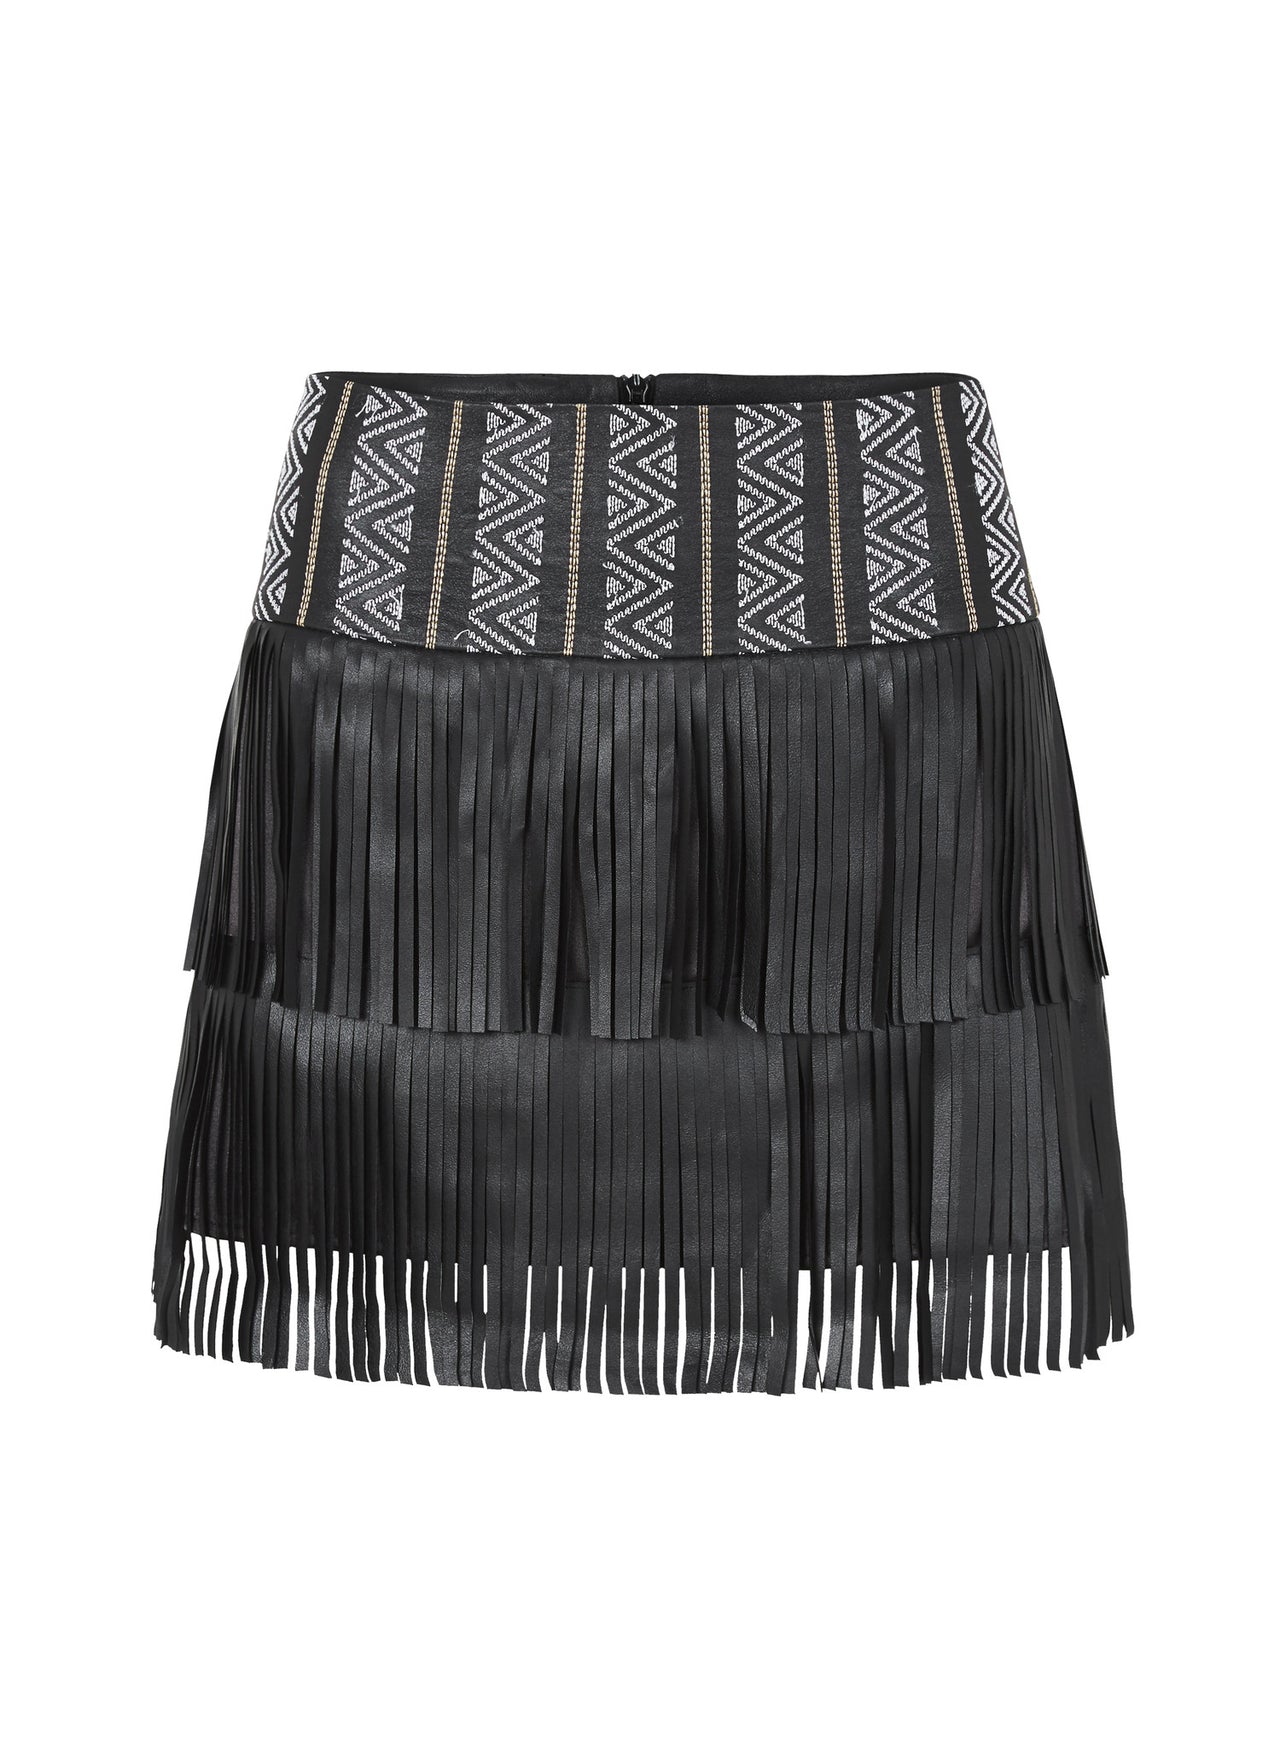 Henderson Fringe Skirt Black Leather - SAMPLE